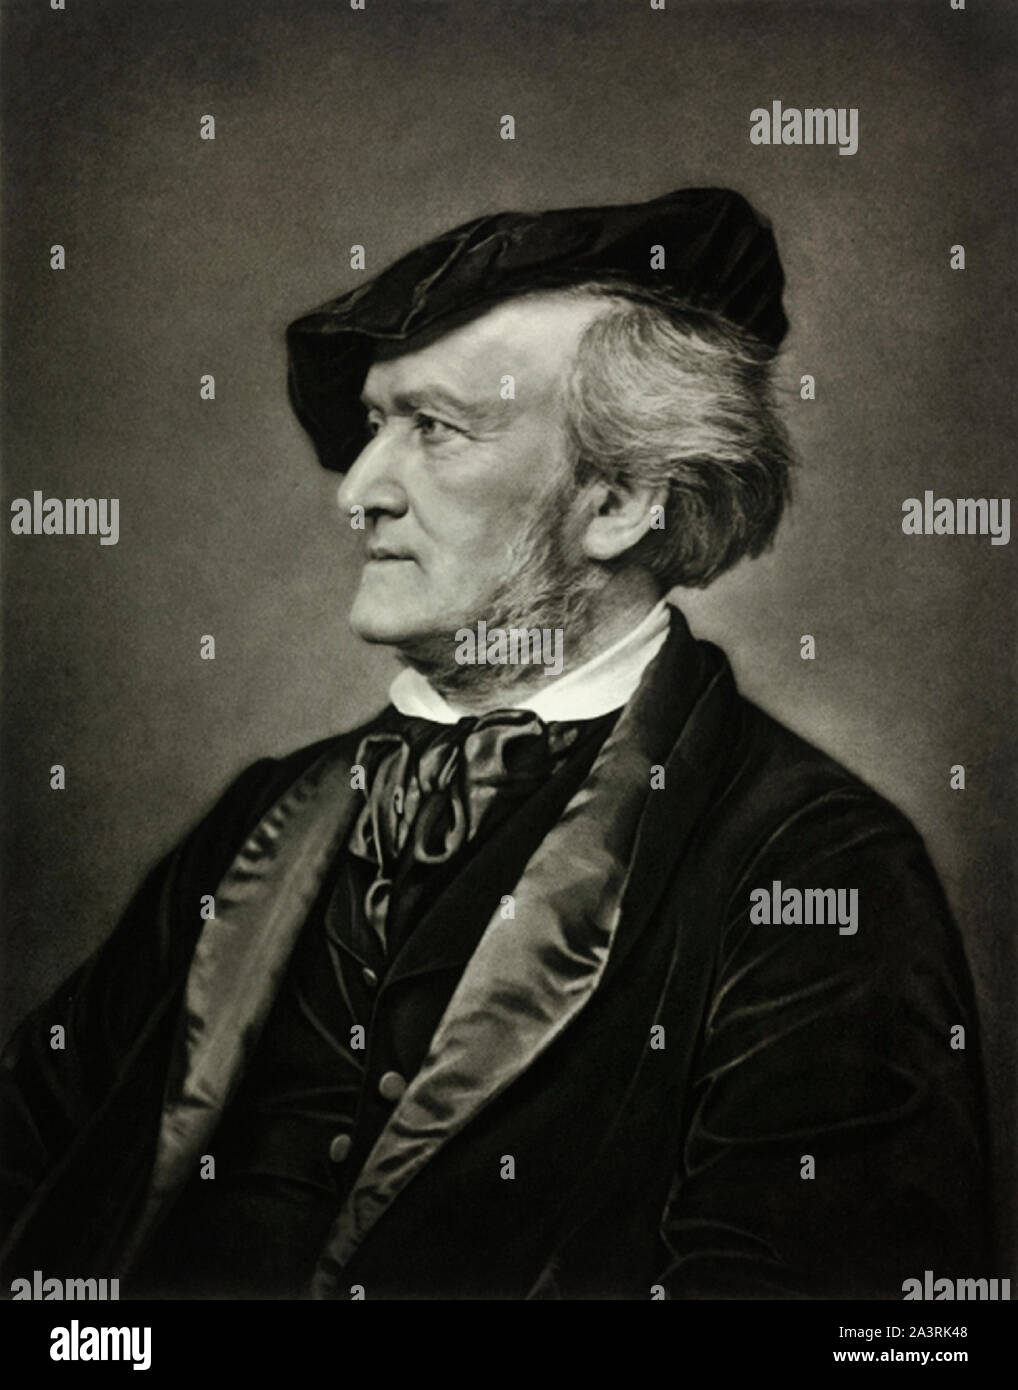 Wilhelm Richard Wagner (1813-1883) war ein deutscher Komponist, Regisseur, Polemiker, und Dirigent, der vor allem für seine Opern bekannt ist. Stockfoto